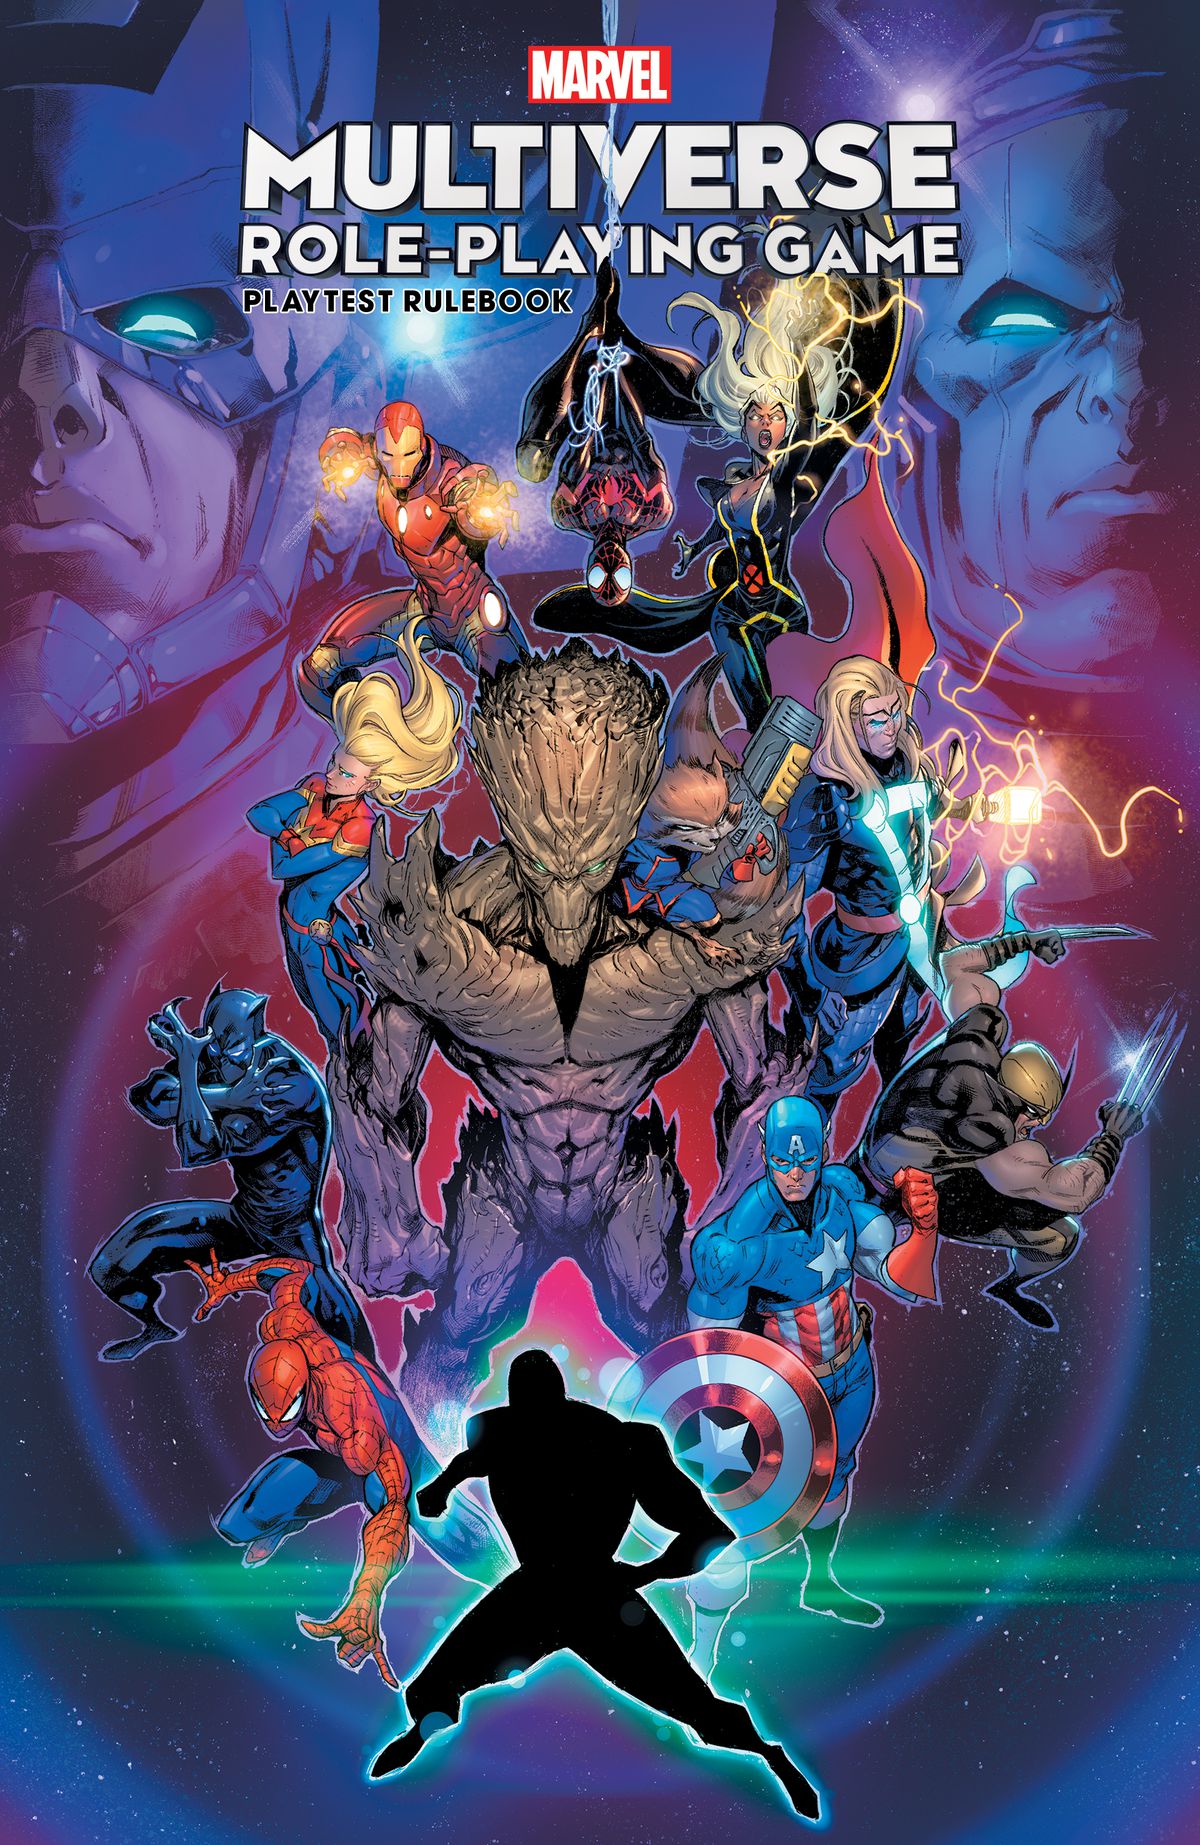 Copertina del libro delle regole del test di gioco del multiverso Marvel, con gli eroi Spider-Man, Capitan America, Black Panther, Capitan Marvel e altri.